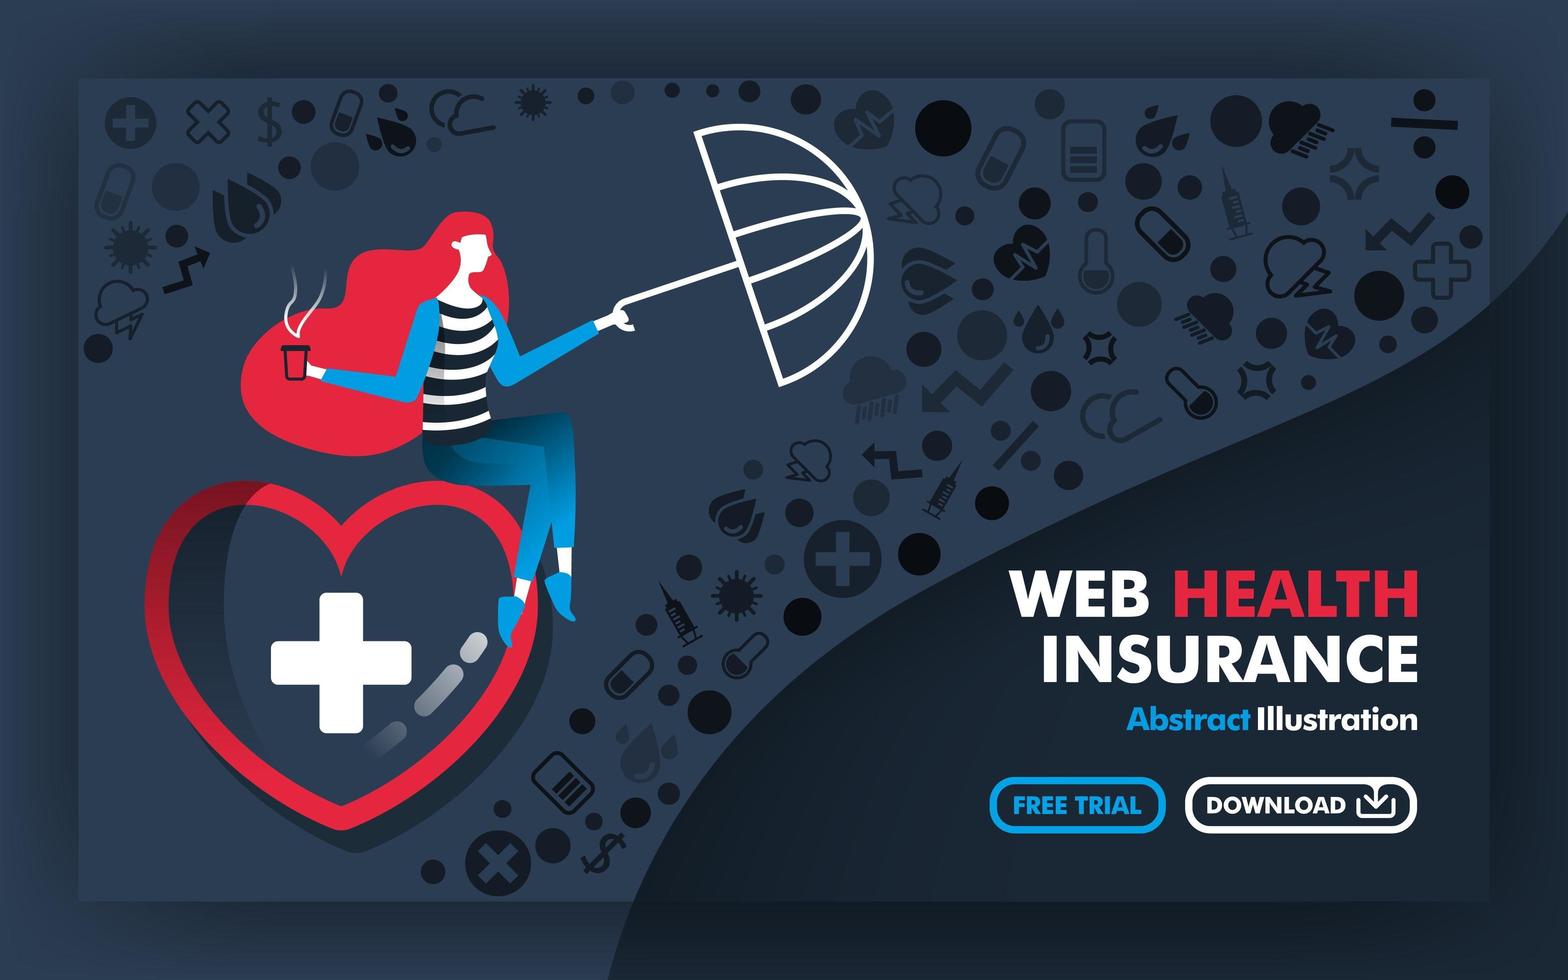 Vektor abstrakte Illustration Banner und Poster in grau mit dem Titel Web-Krankenversicherung. Die Frau sitzt im großen Herzen und hält einen Regenschirm, um die Krankheit zu schützen. flacher Cartoon-Stil